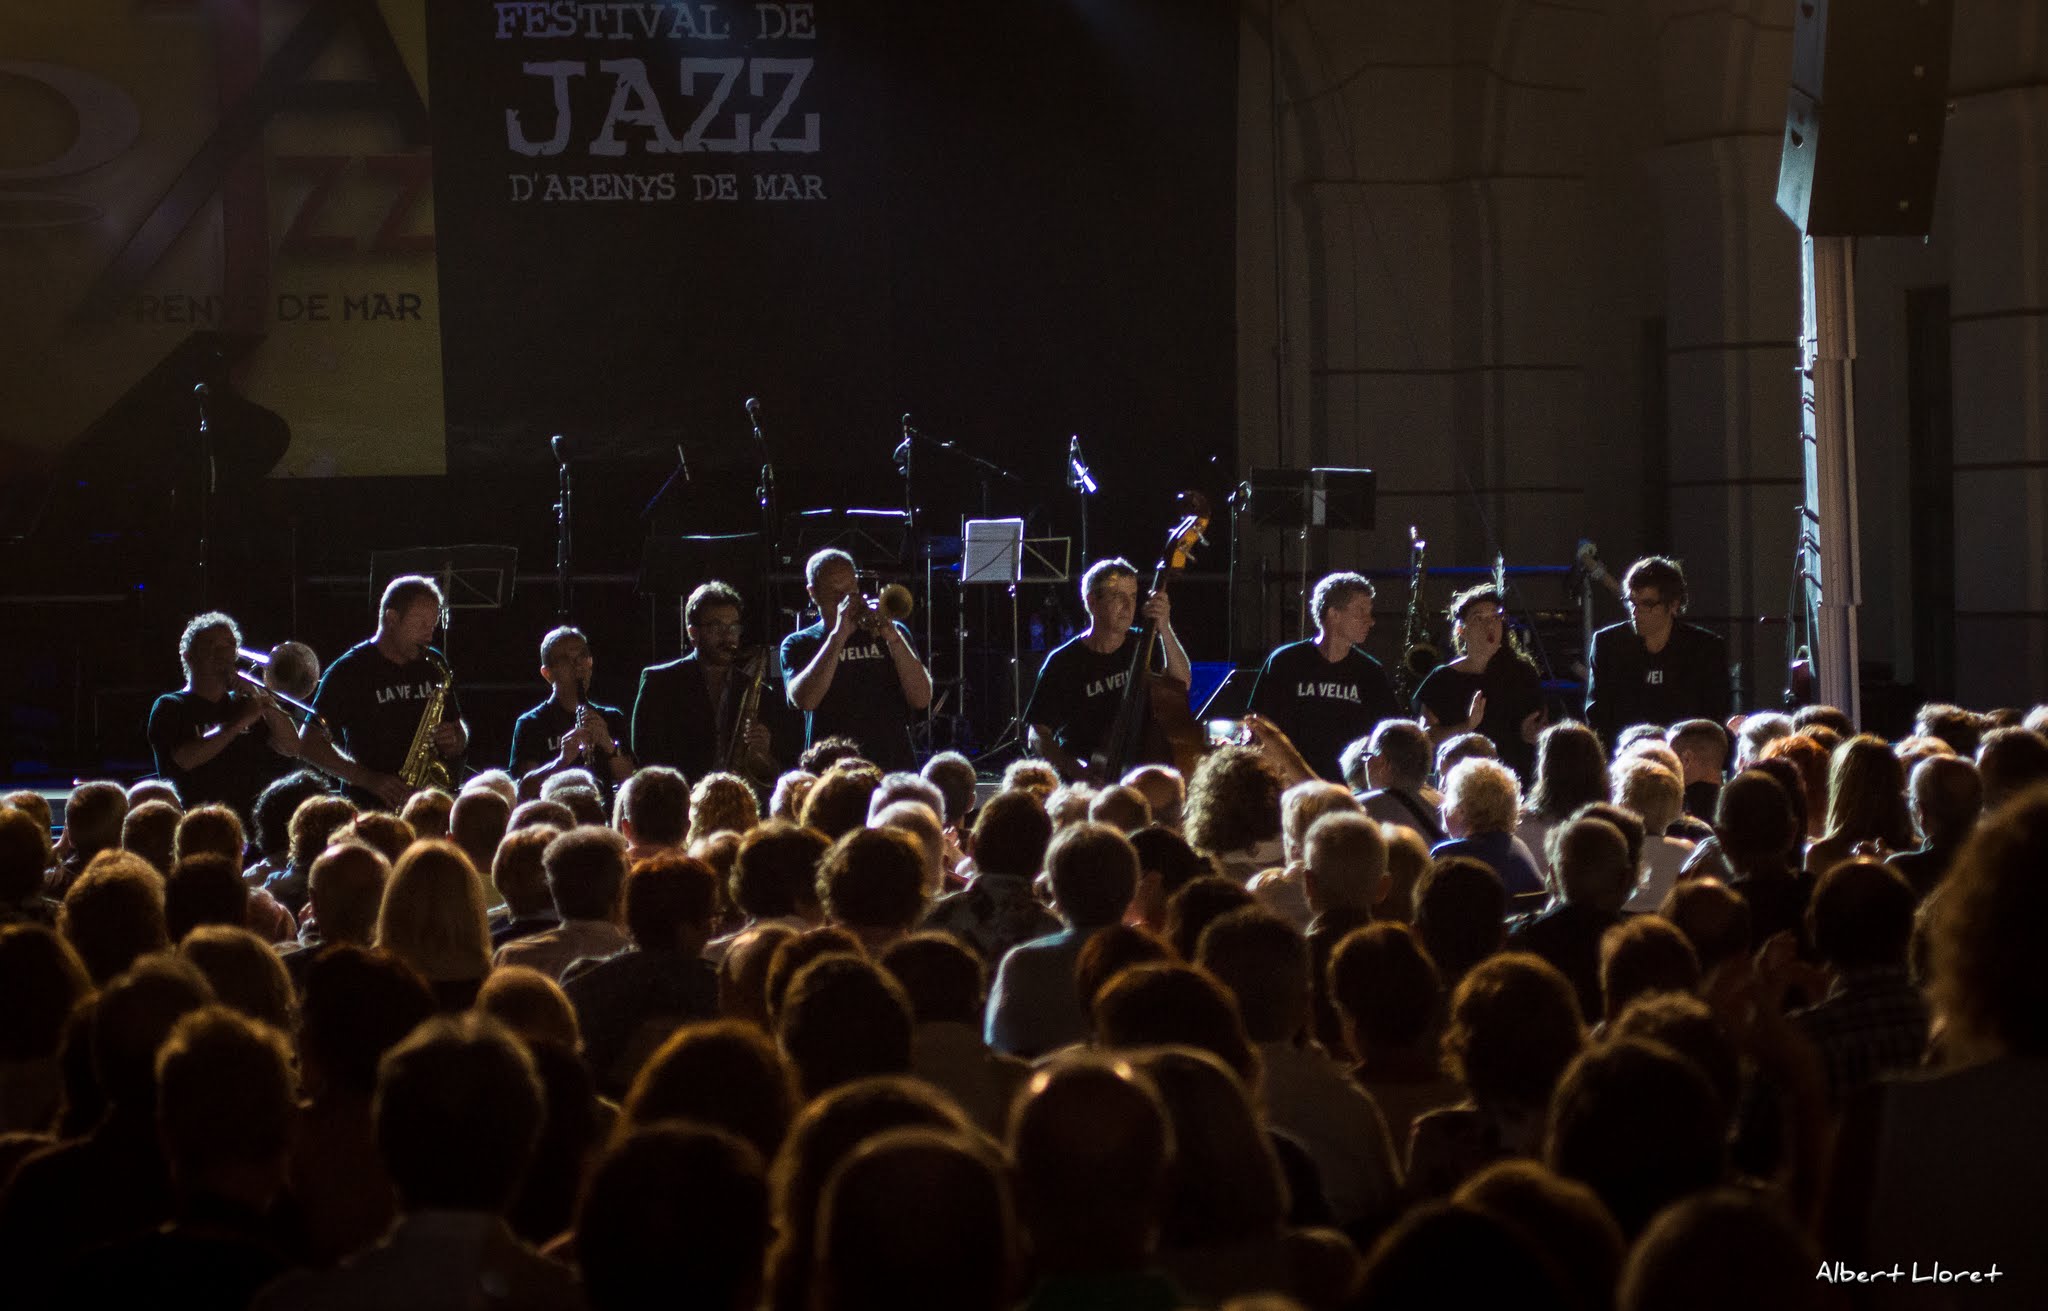 Imatges del 25 Festival de Jazz d'Arenys de Mar - 2016 - Foto 26515186